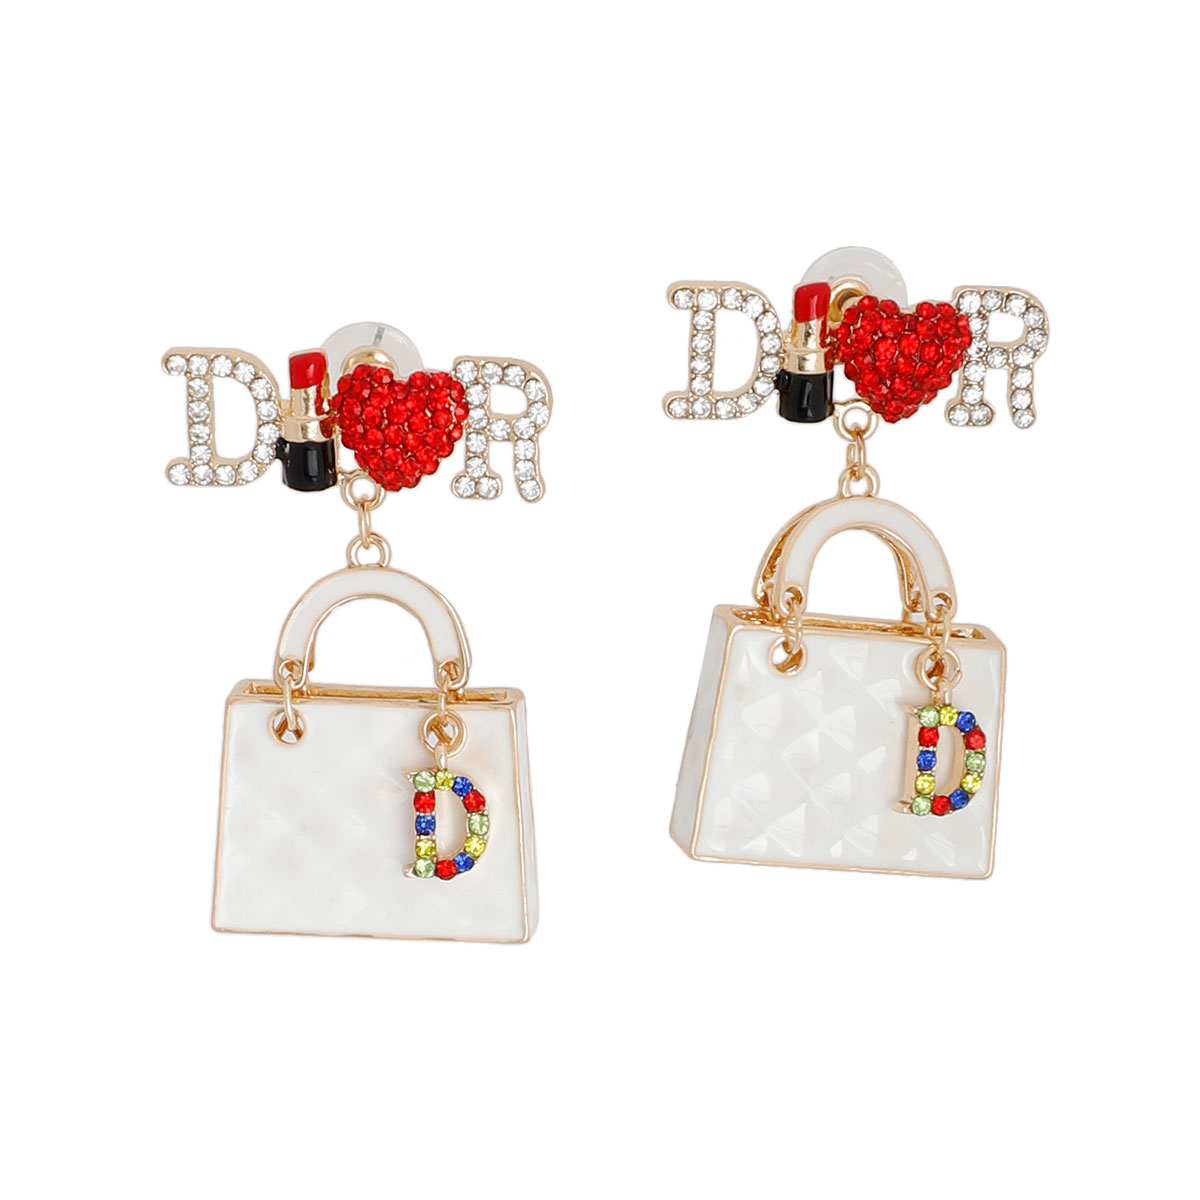 White Designer Handbag Charm Earrings